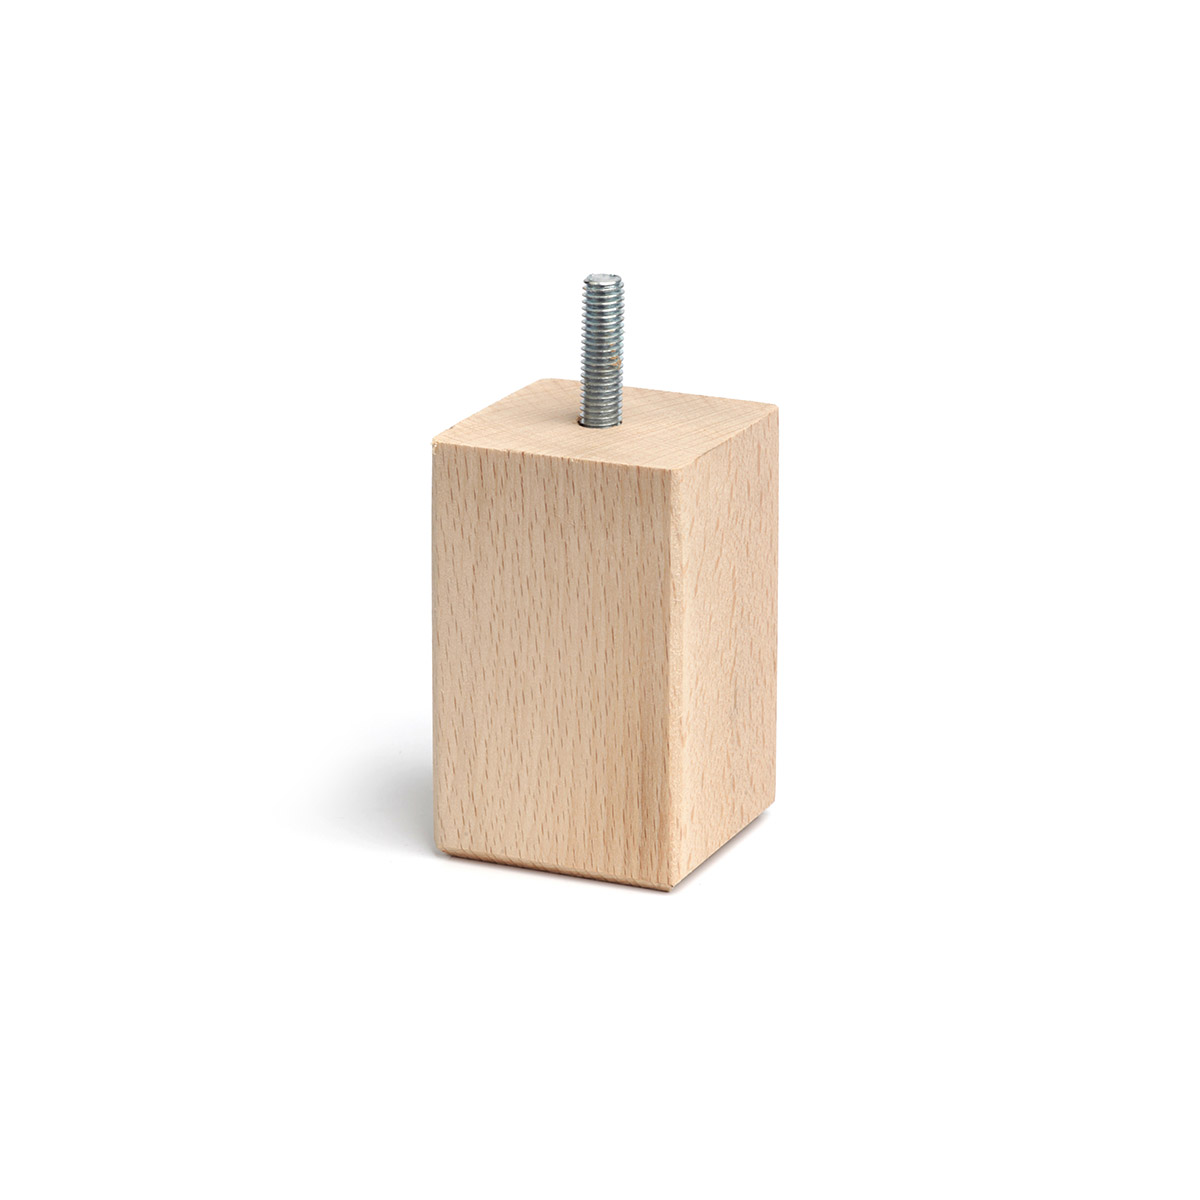 Pied carré en bois d'une hauteur de 80 mm et finition hêtre brut. Dimensions: 45x45x80 mm